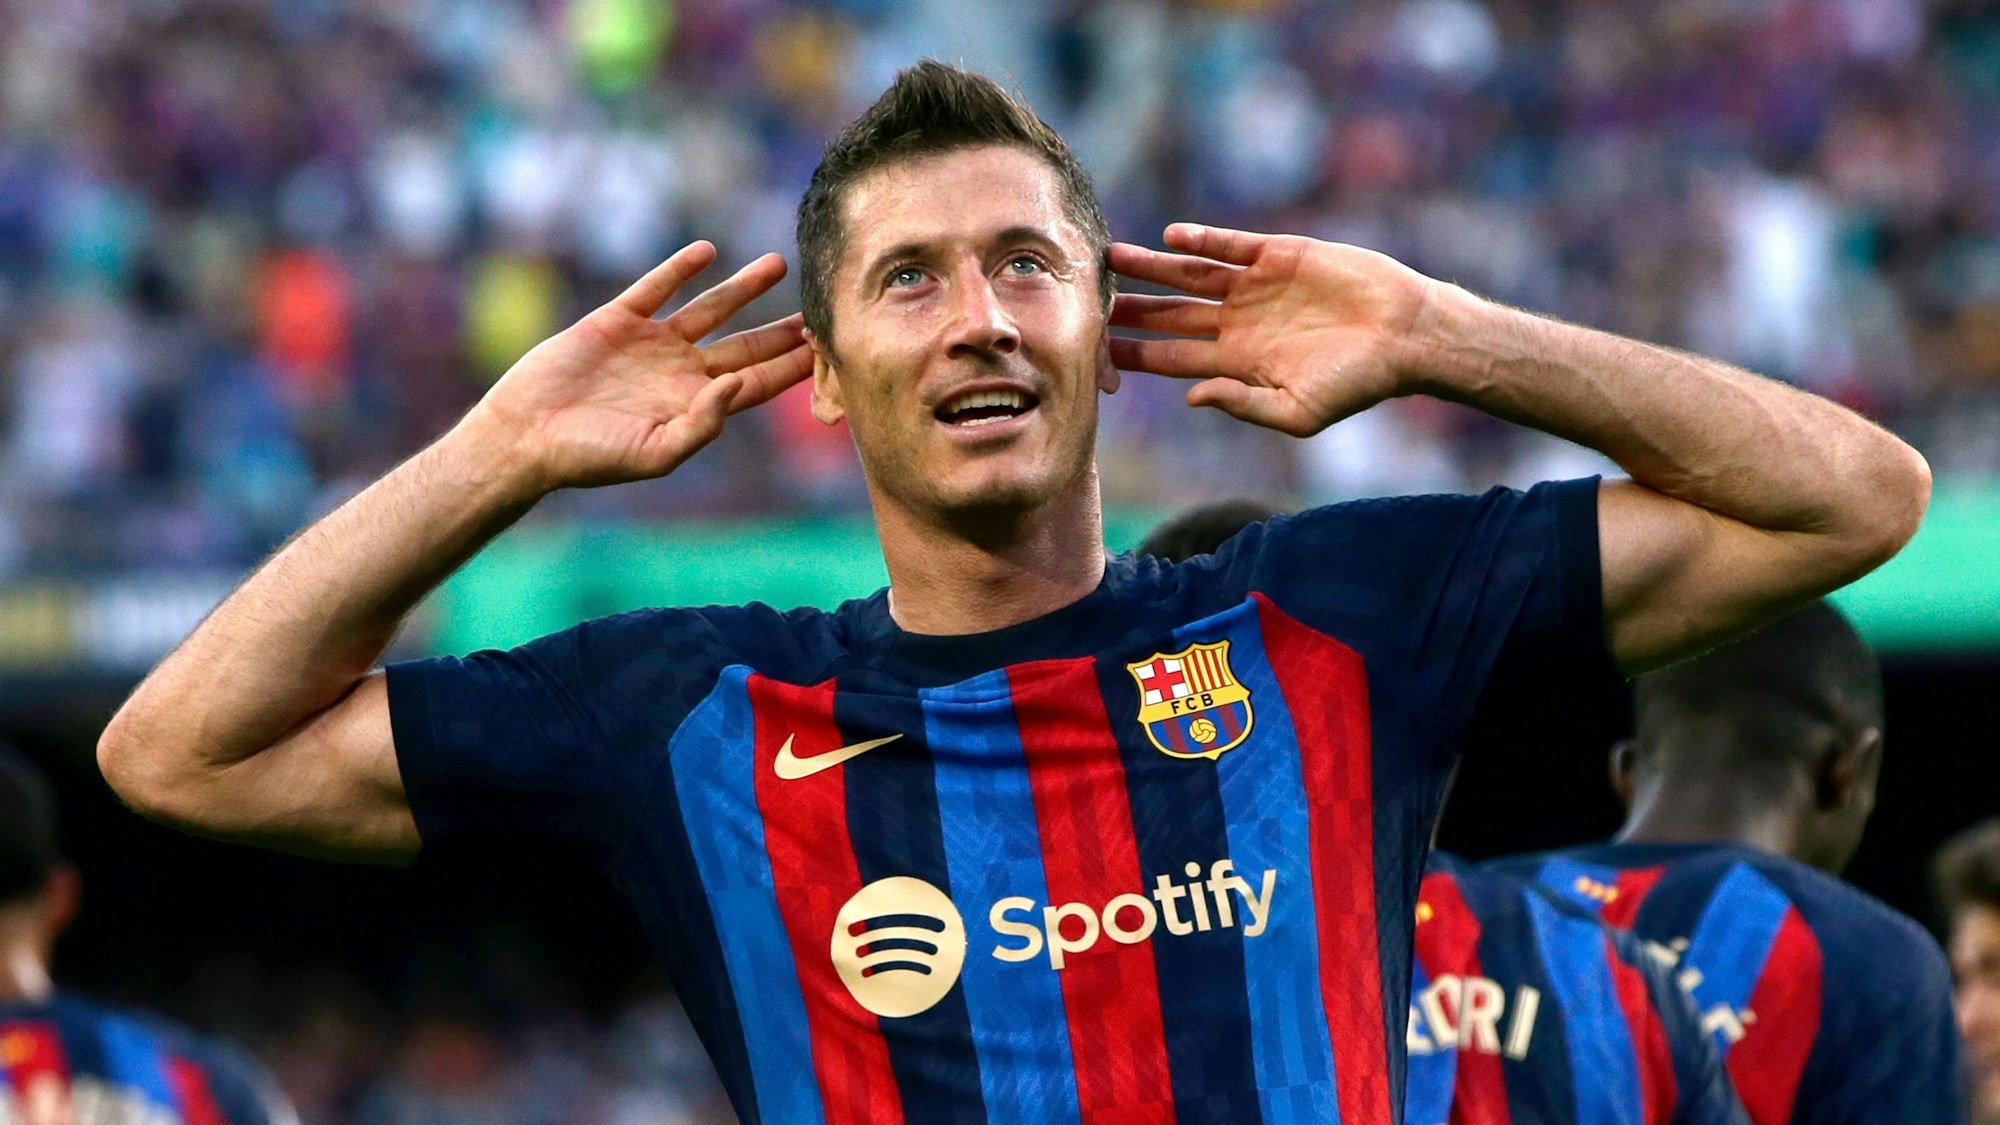 Robert Lewandowski vom FC Barcelona jubelt und hält dabei die Hände an seine Ohren, um den Jubel der Zuschauerinnen und Zuschauer zu hören.